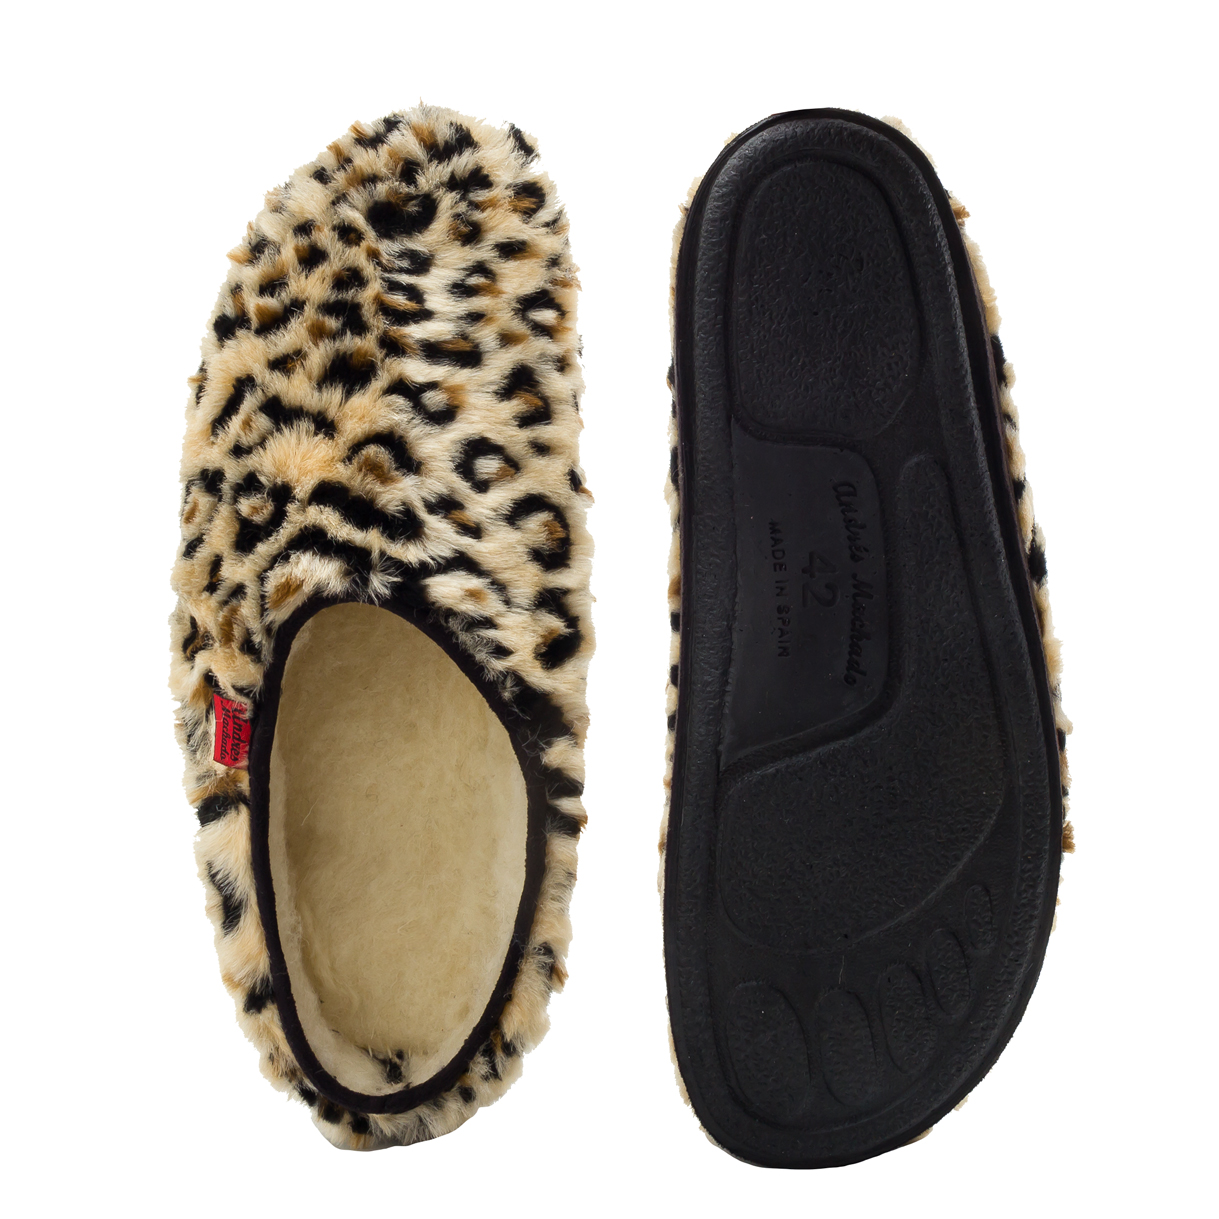 Komfort Fußbett Plüsch-Hausschuhe im Leopardenfell-Look. 